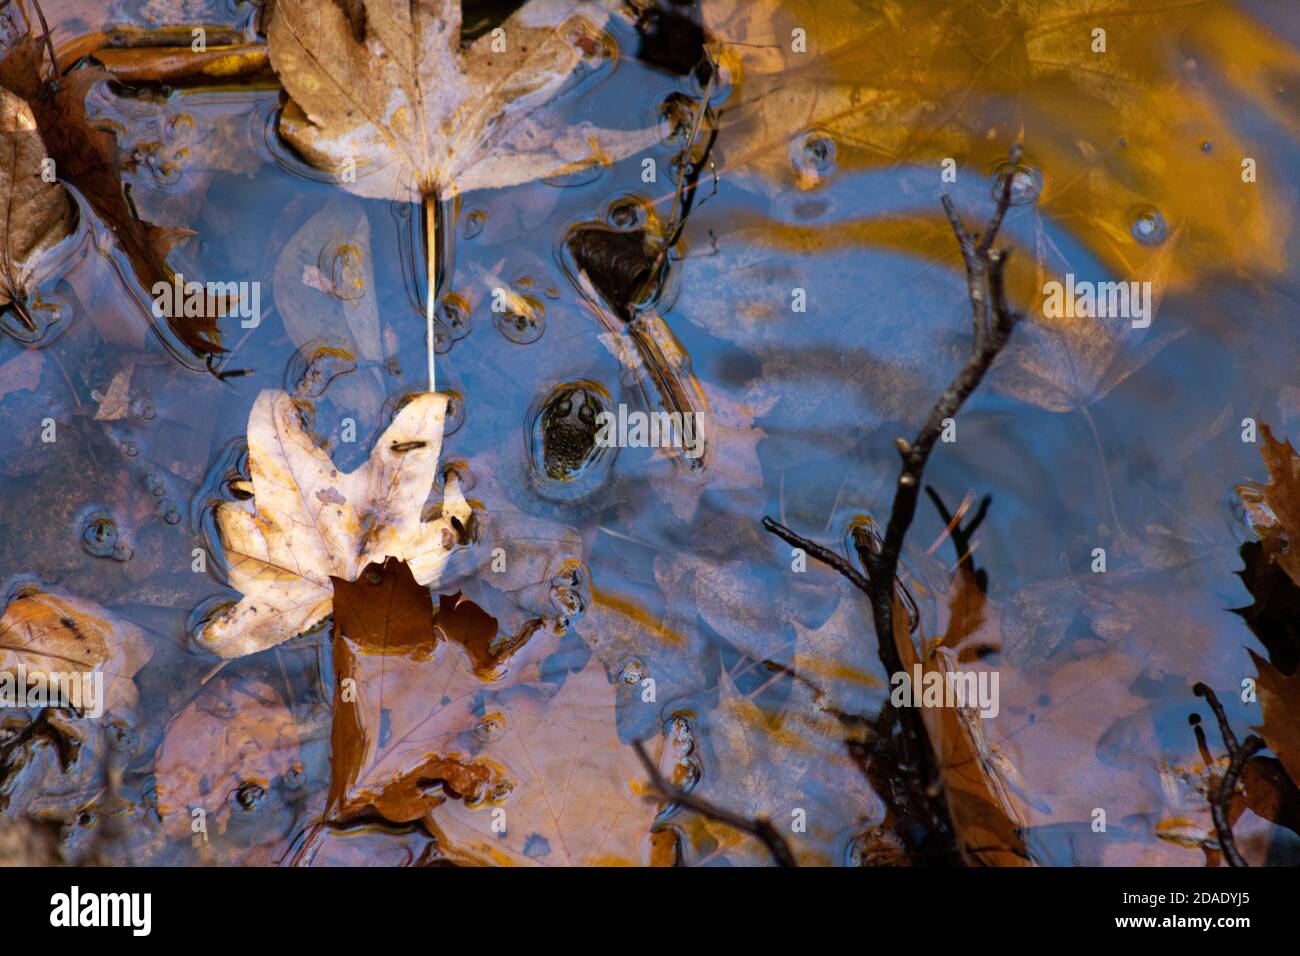 Una rana verde se mueve con la cabeza por encima de la superficie de un flujo lento para respirar, mientras que las hojas de otoño flotan lentamente Foto de stock